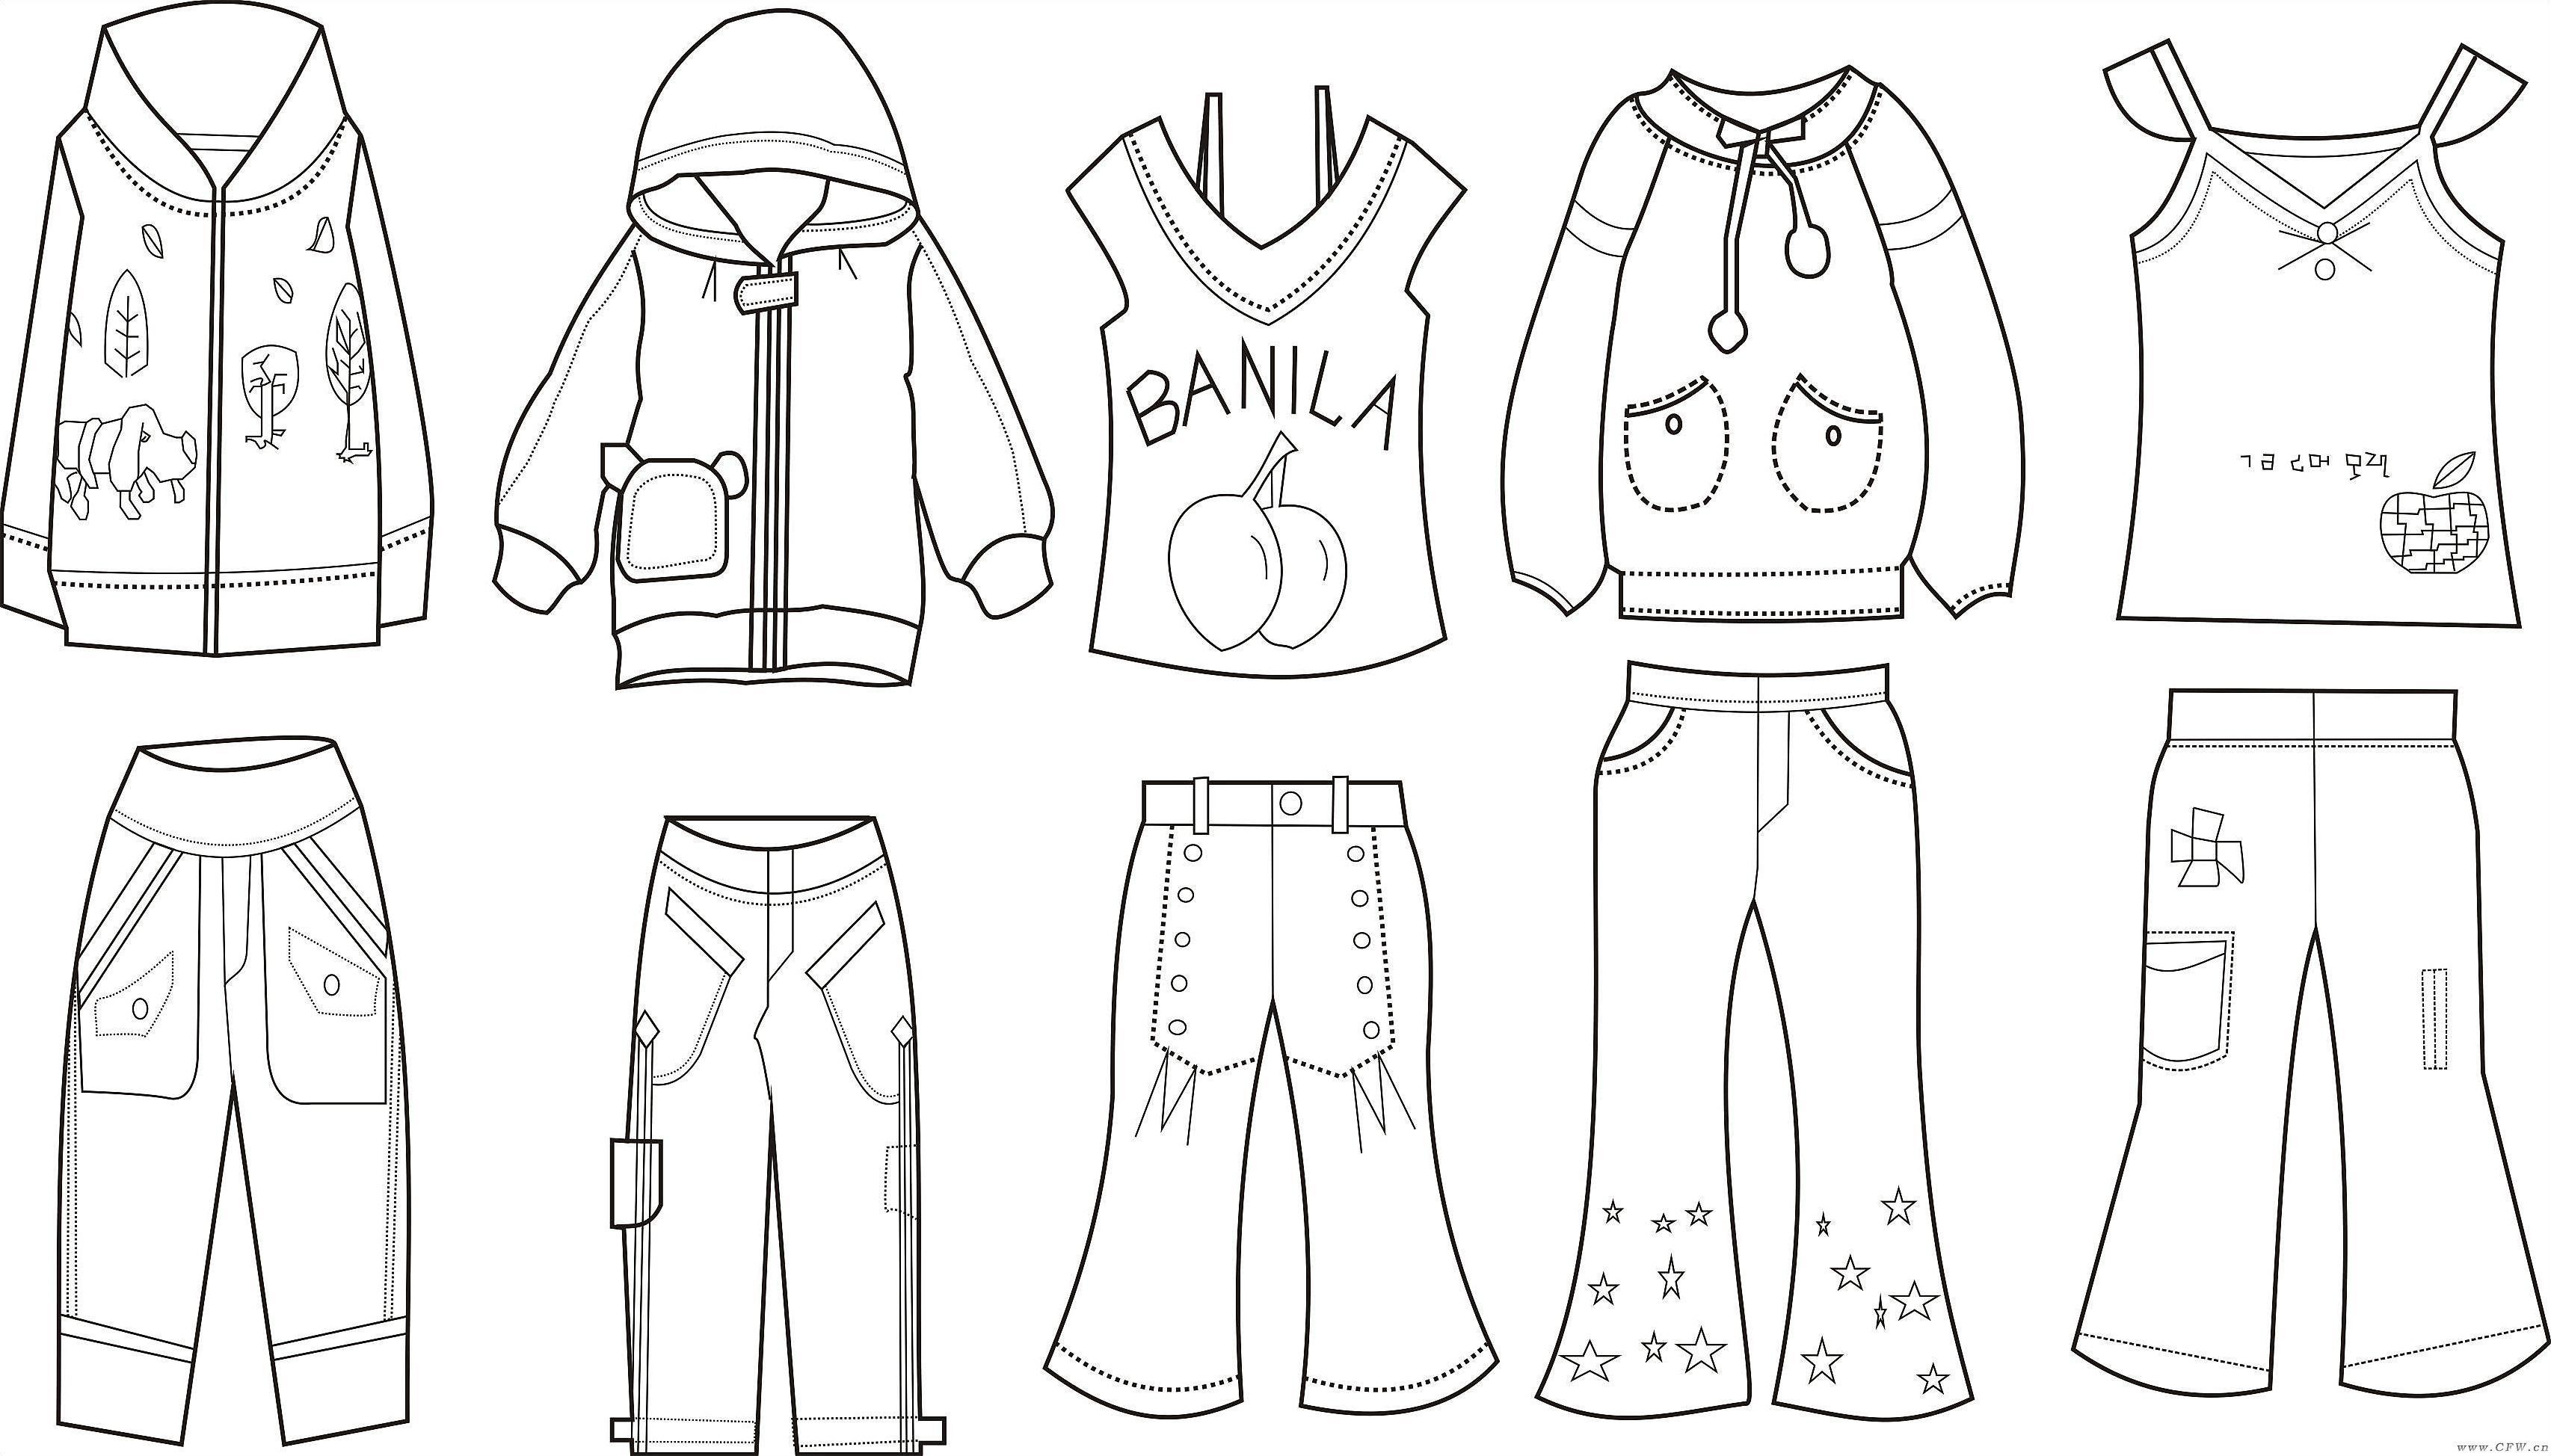 校园系列(校服设计图)班服设计-童装设计-服装设计